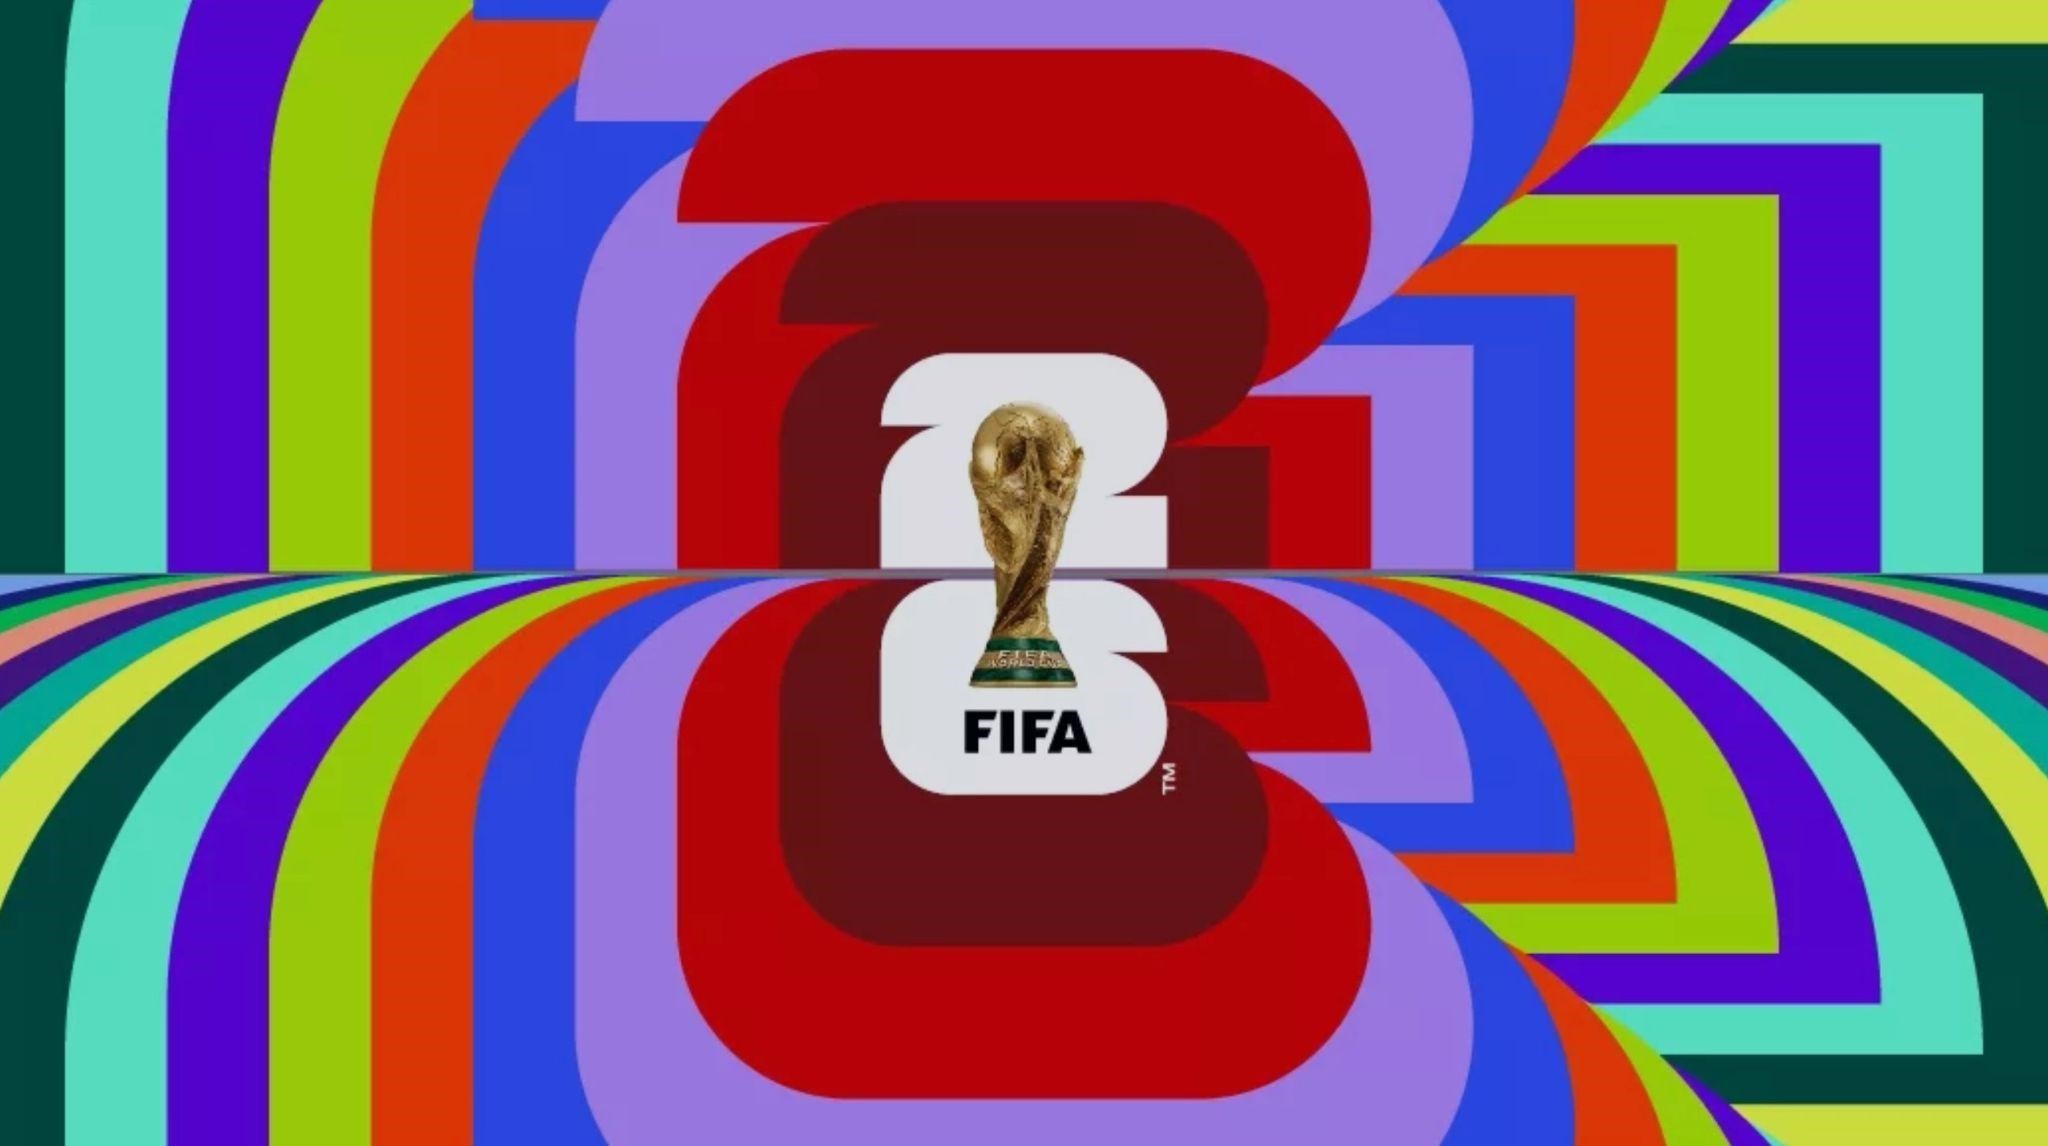 FIFA APRESENTA IDENTIDADE VISUAL DA COPA 2026